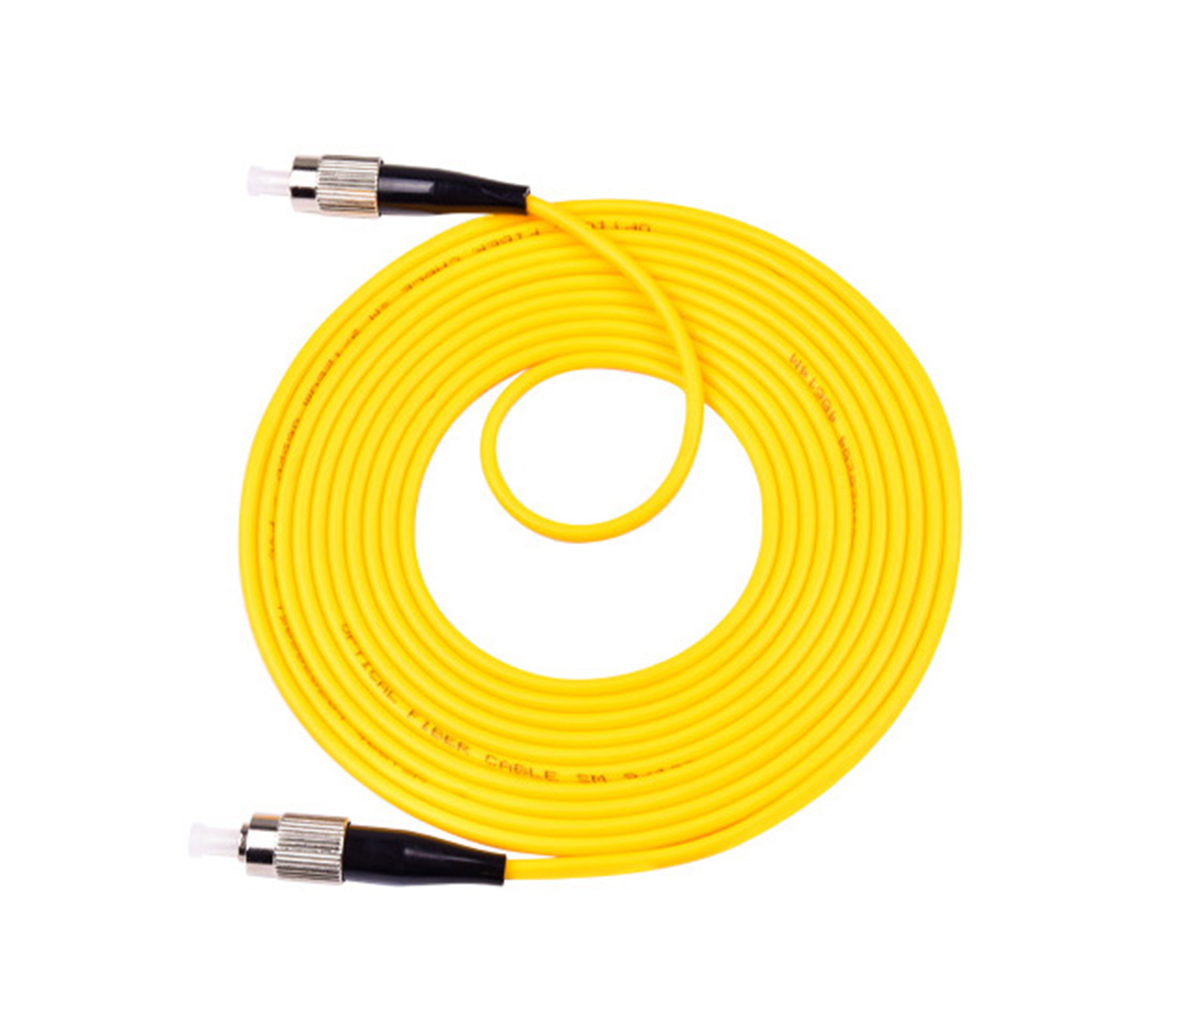 Other special fiber optic connectors